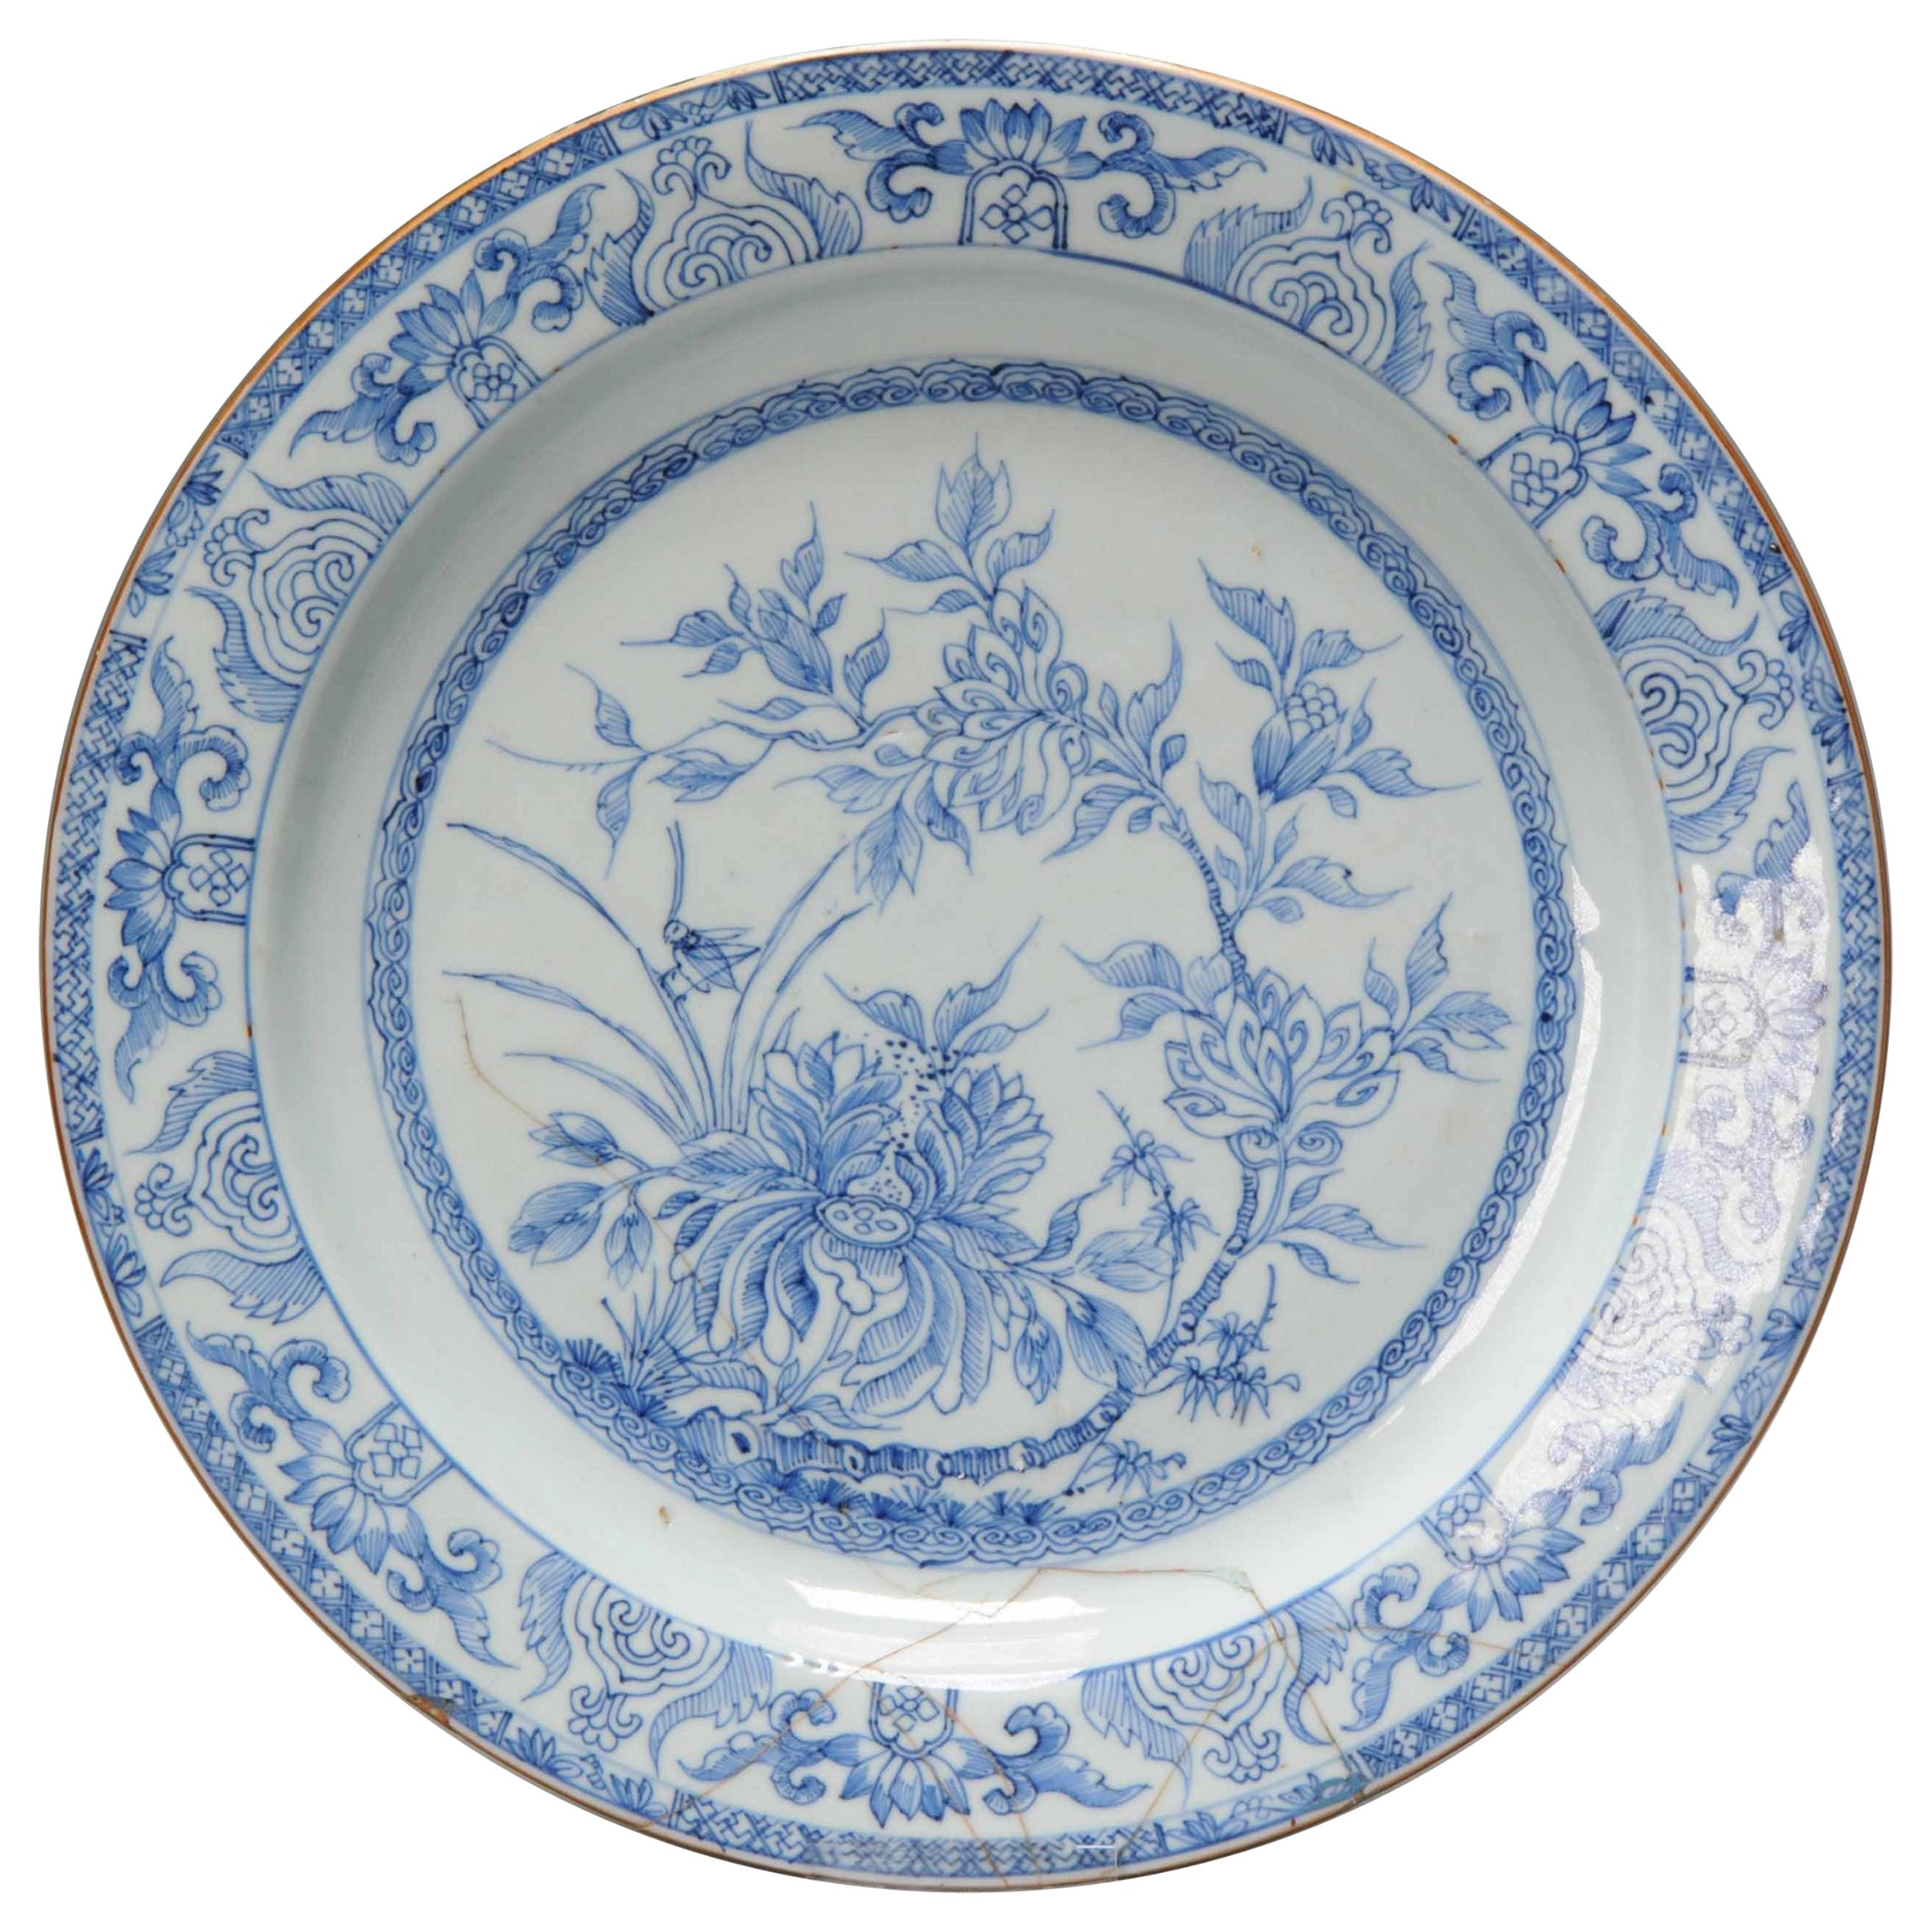 Grande assiette/assiette ancienne Yongzheng en porcelaine chinoise bleue et blanche, 18ème siècle